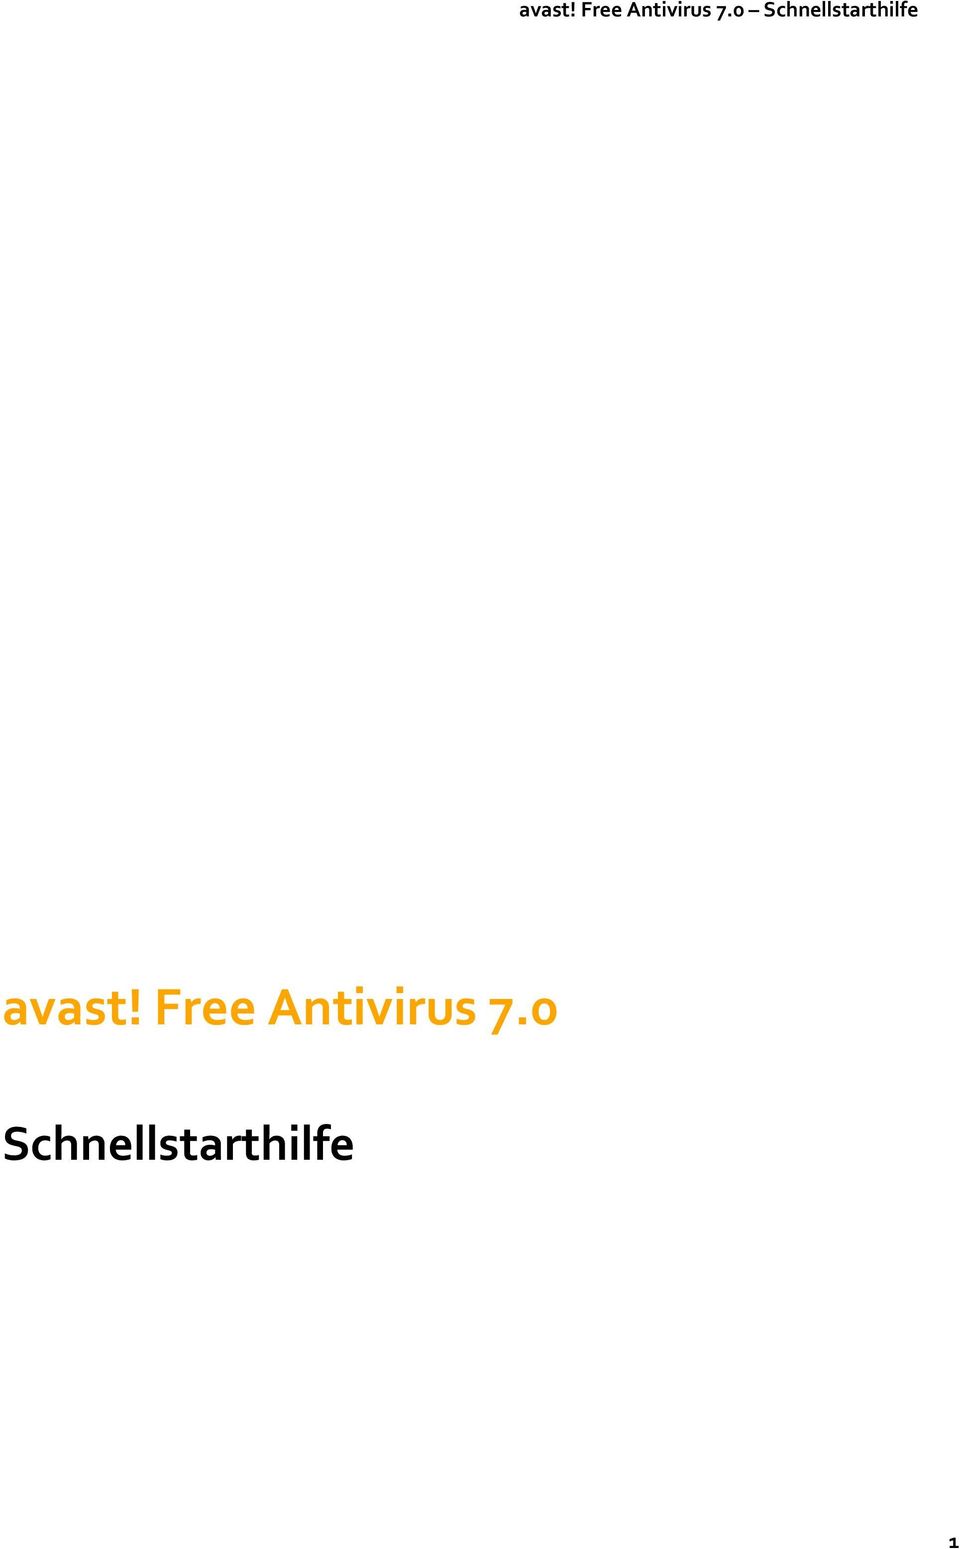 Antivirus 7.